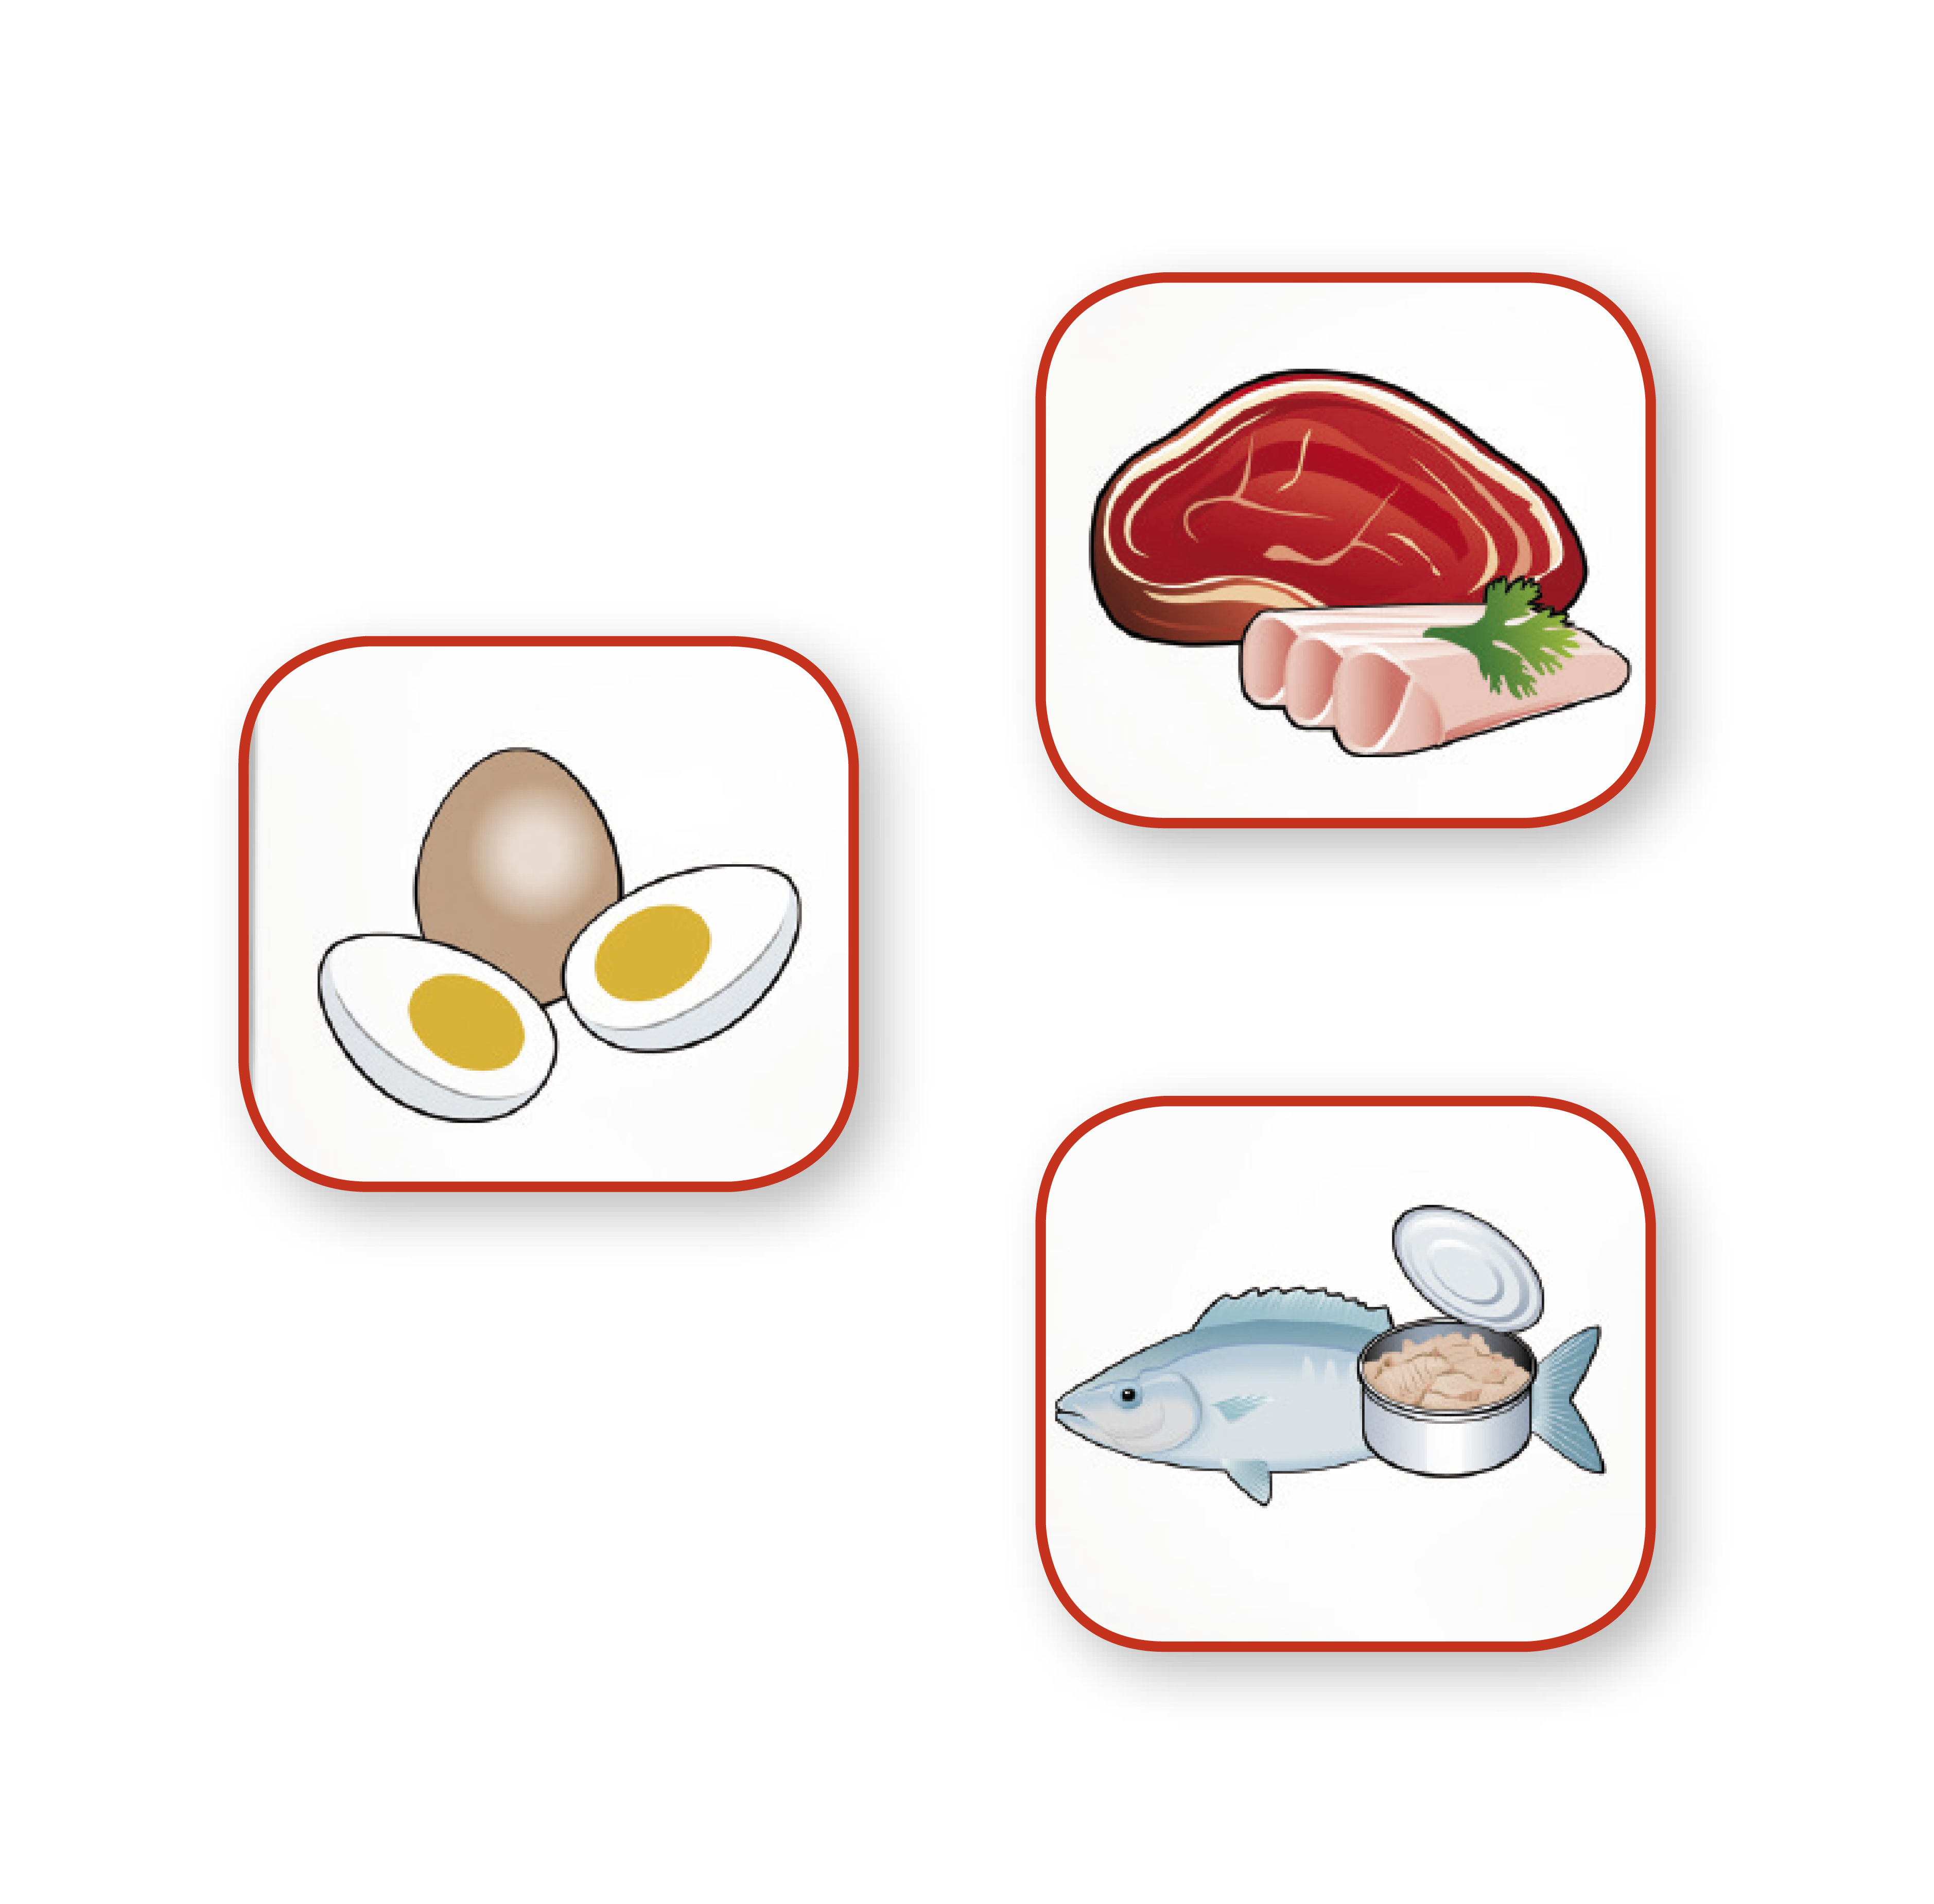 Grafik Ernährung: Fisch, Fleisch, Wurst und Eier